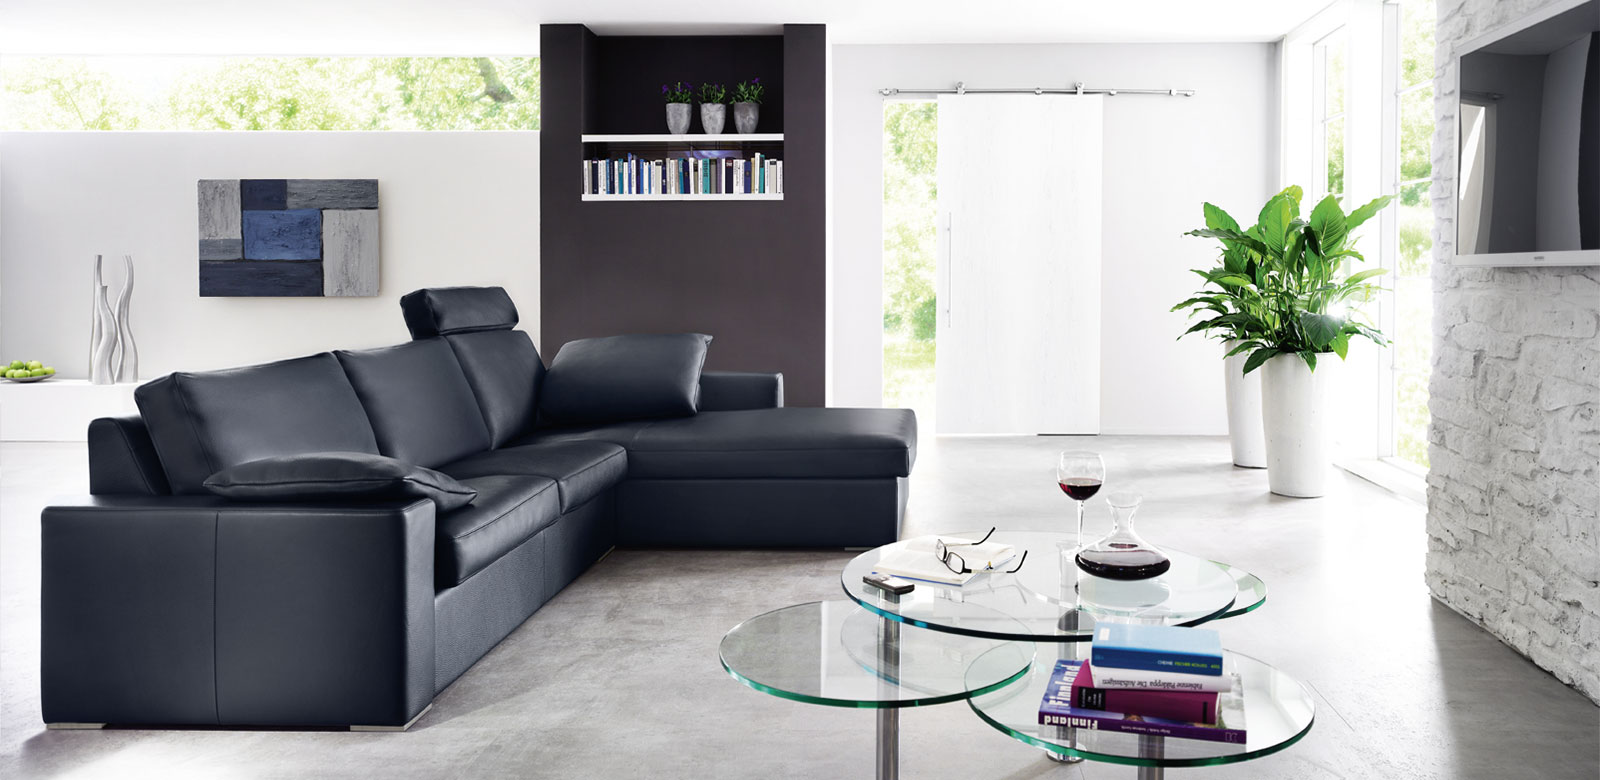 Zijaanzicht CL150 in zwart leer als fauteuilcombinatie met kussens en hoofdsteunen in moderne woonkamer met glazen tafels.